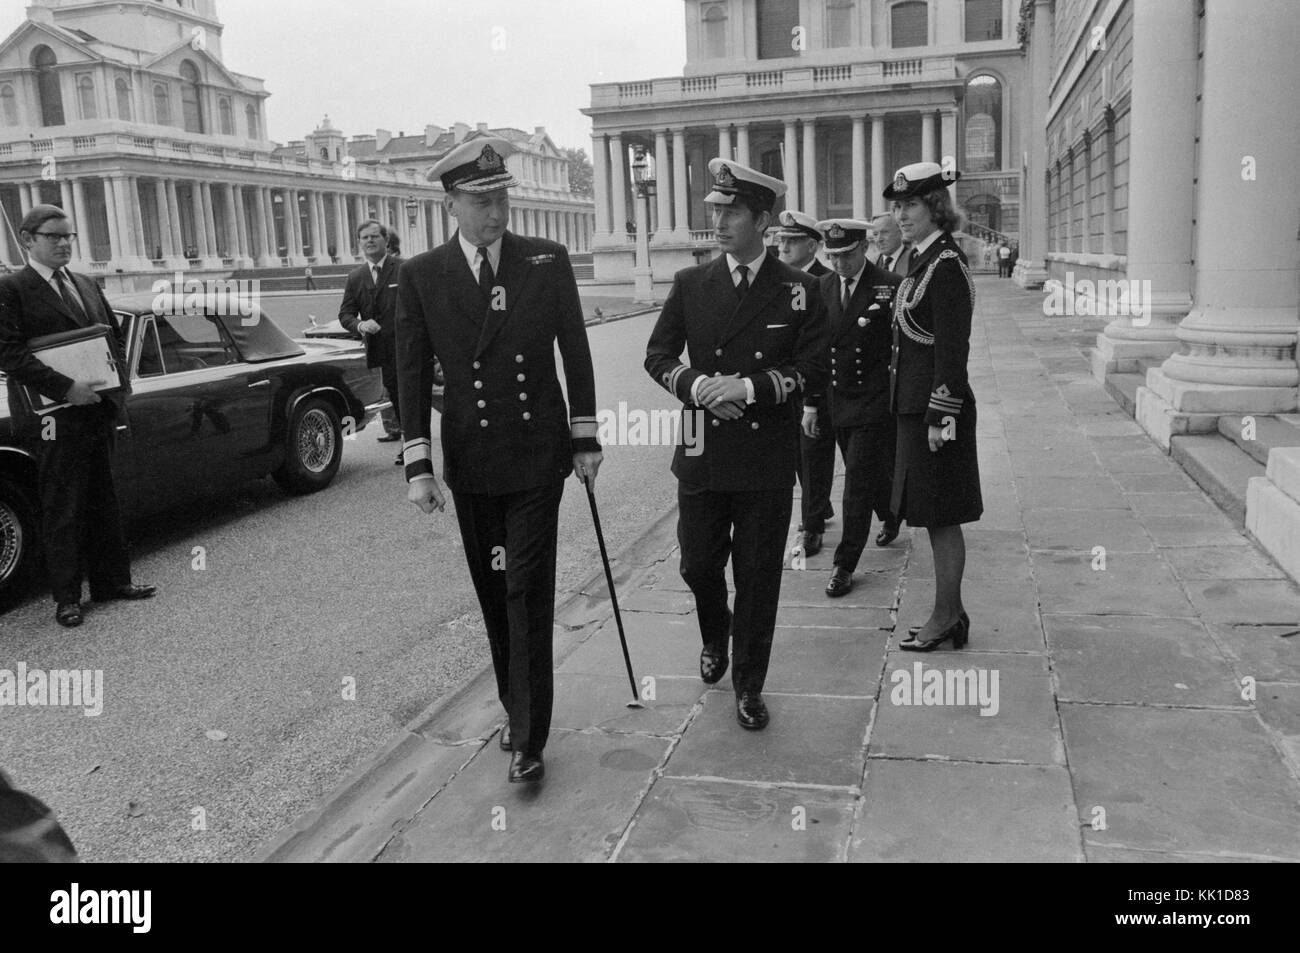 Son Altesse Royale le Prince Charles visiter Greenwich Naval College à Londres en 1975. Le prince Charles dans son uniforme de la marine. Banque D'Images